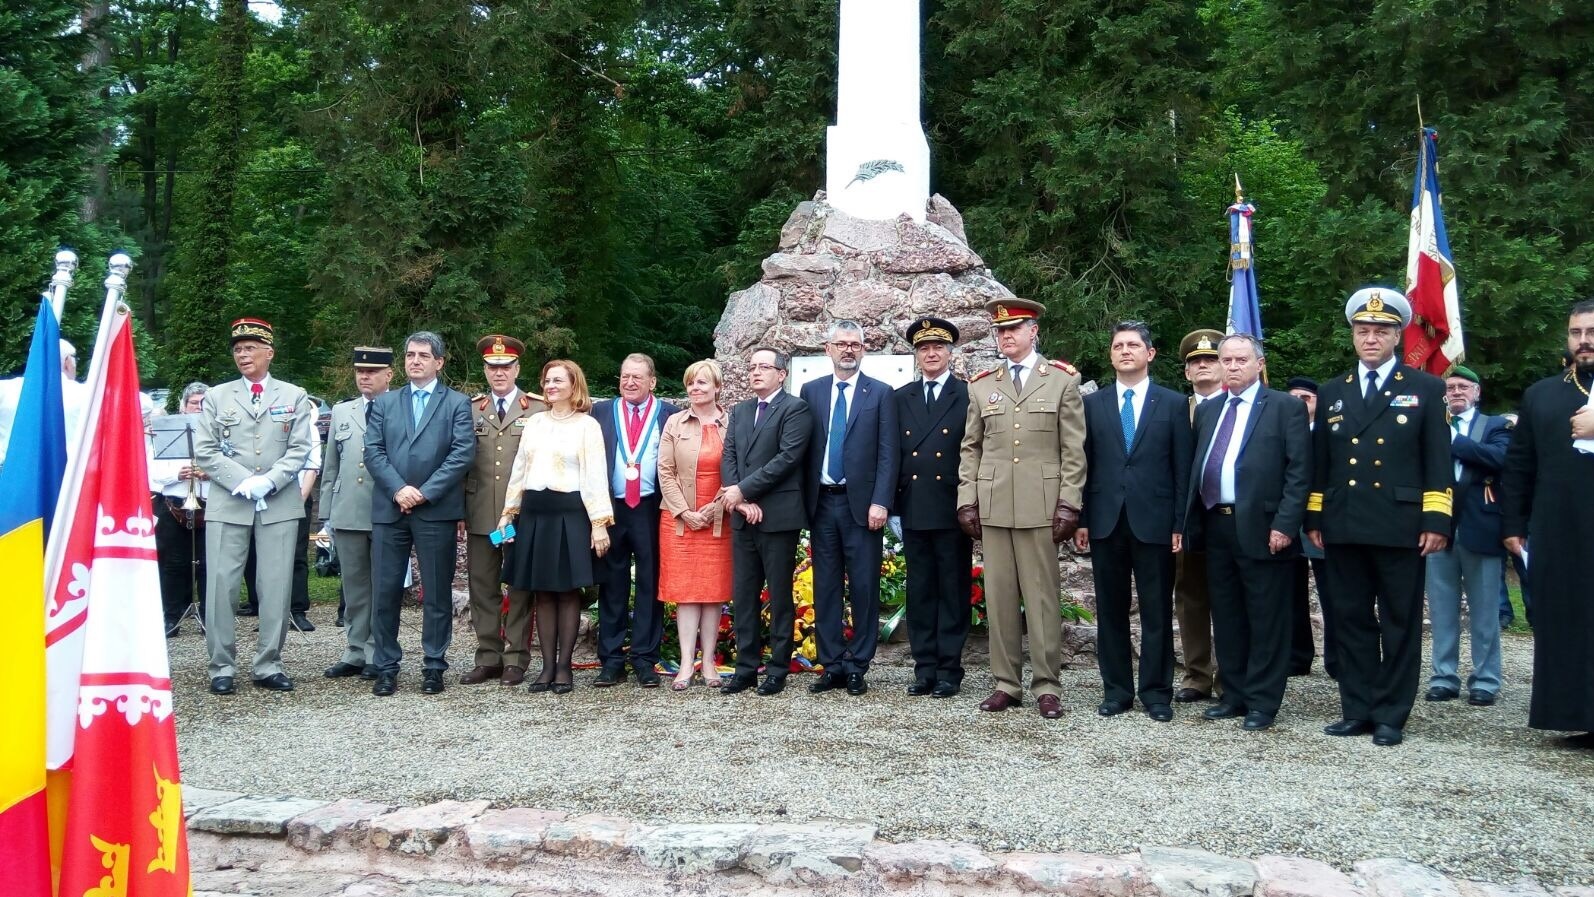 Ceremonie în memoria eroilor români din Primul Război Mondial înhumați în Franţa